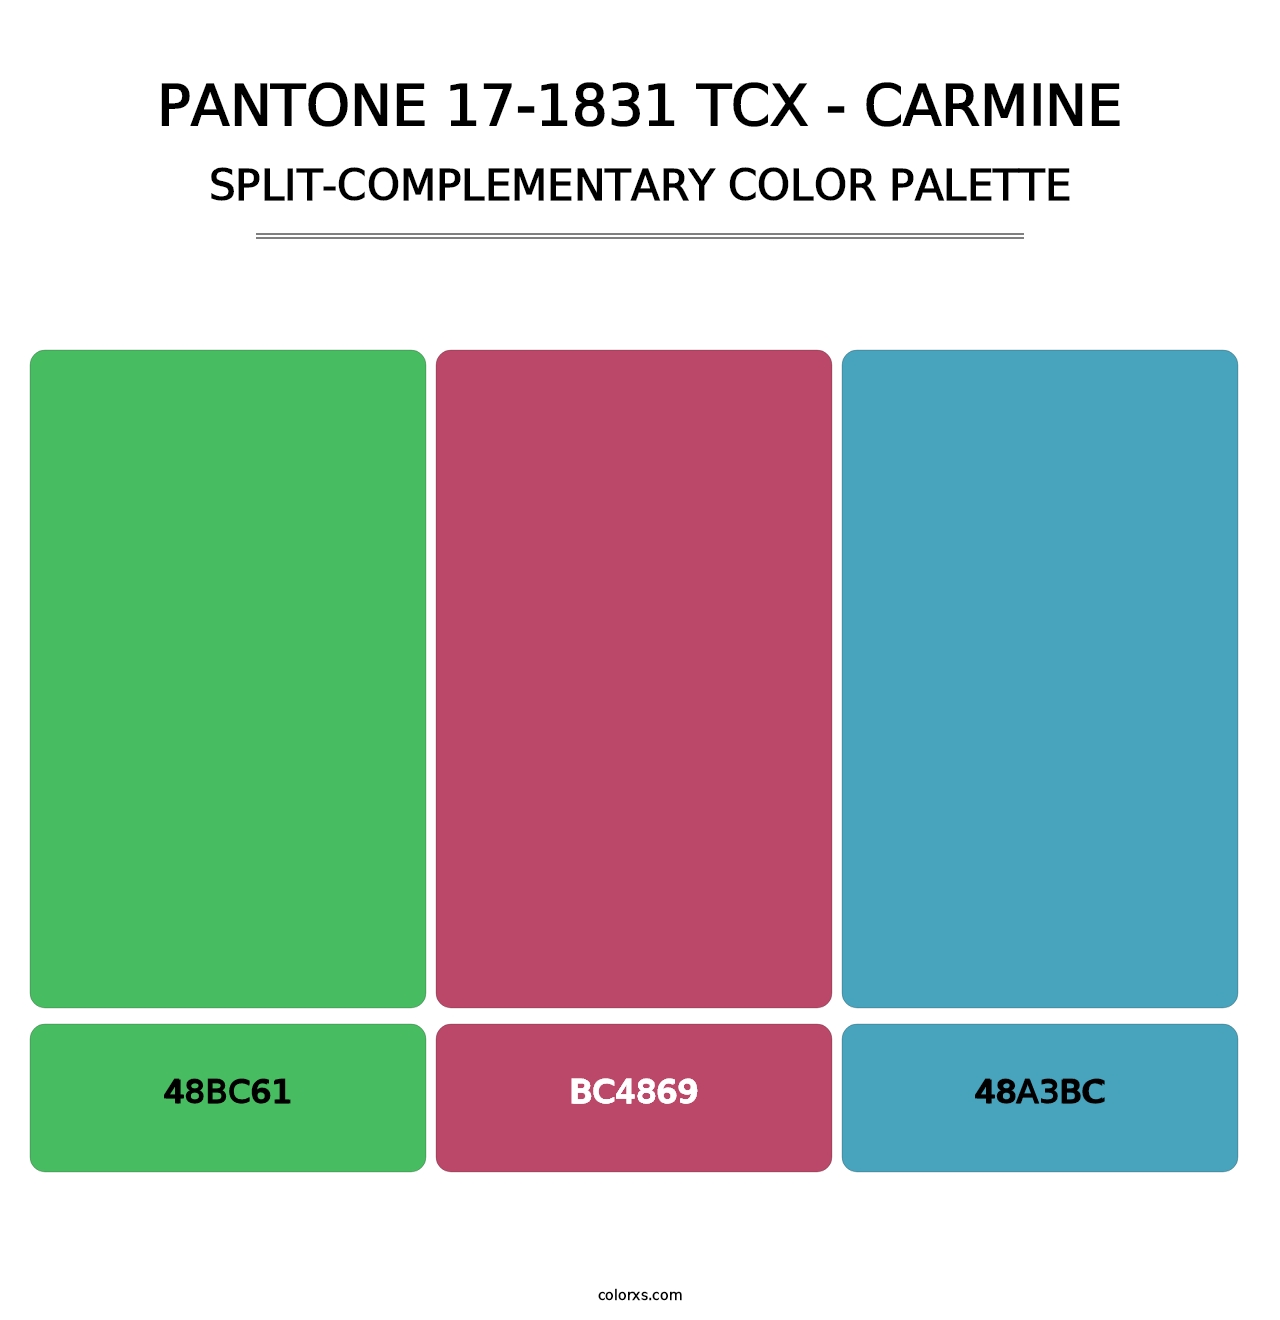 PANTONE 17-1831 TCX - Carmine - Split-Complementary Color Palette